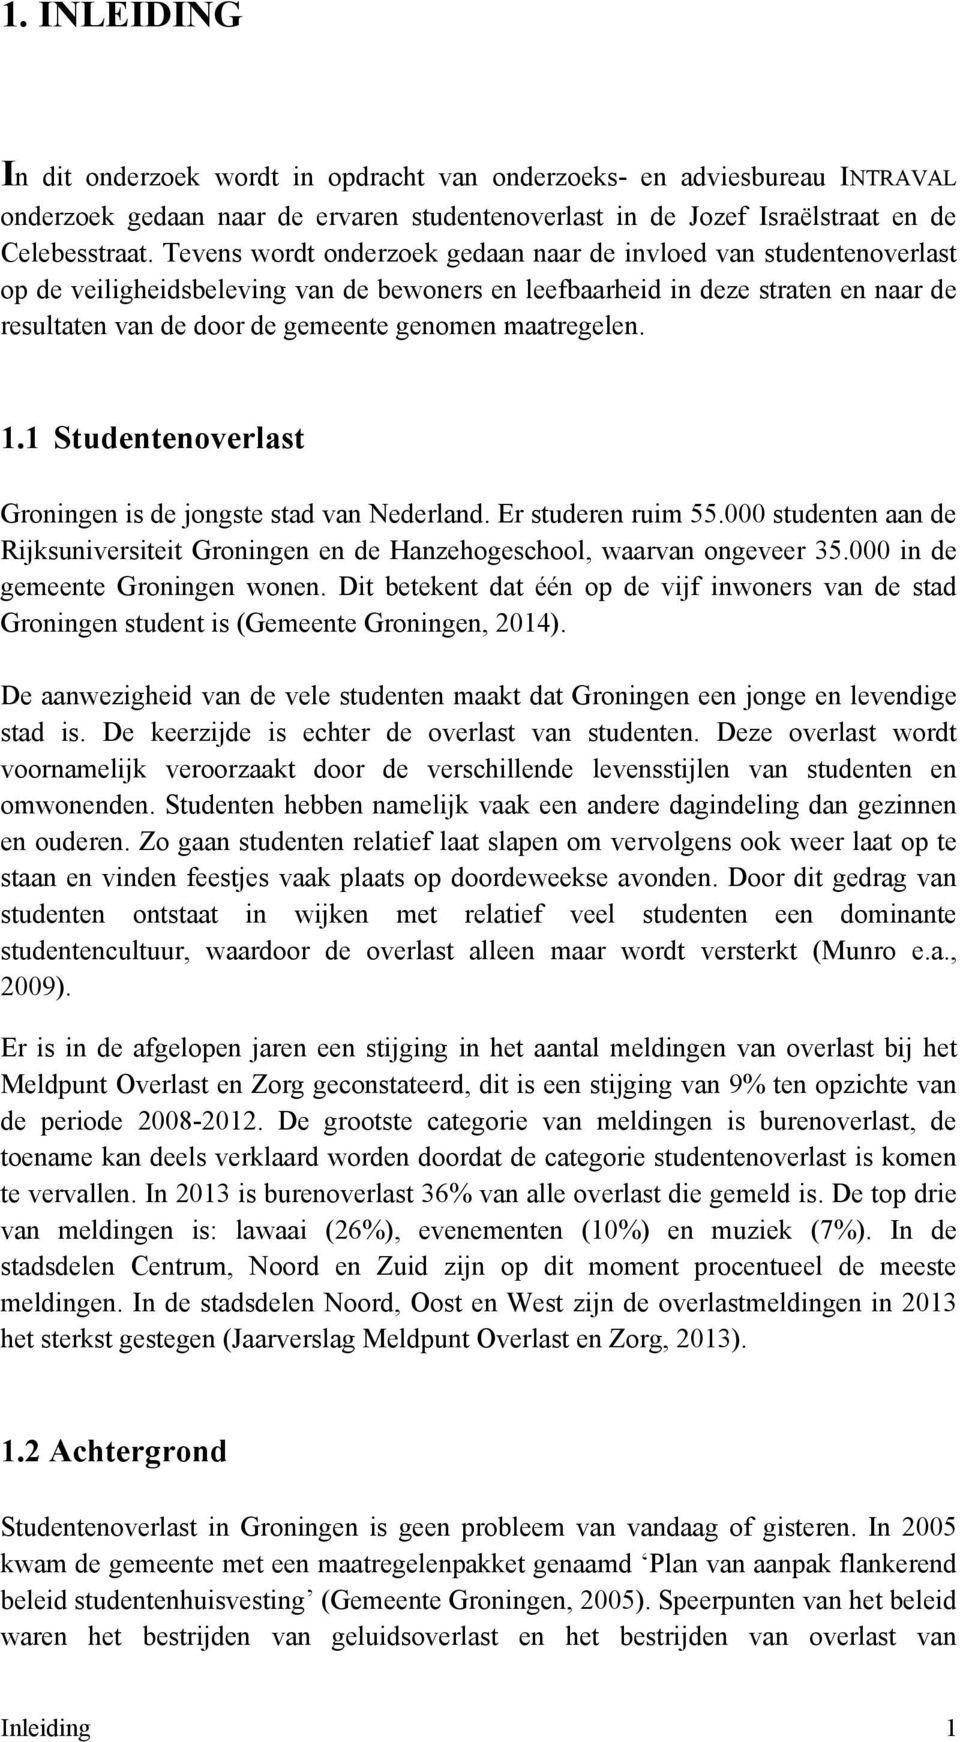 maatregelen. 1.1 Studentenoverlast Groningen is de jongste stad van Nederland. Er studeren ruim 55.000 studenten aan de Rijksuniversiteit Groningen en de Hanzehogeschool, waarvan ongeveer 35.